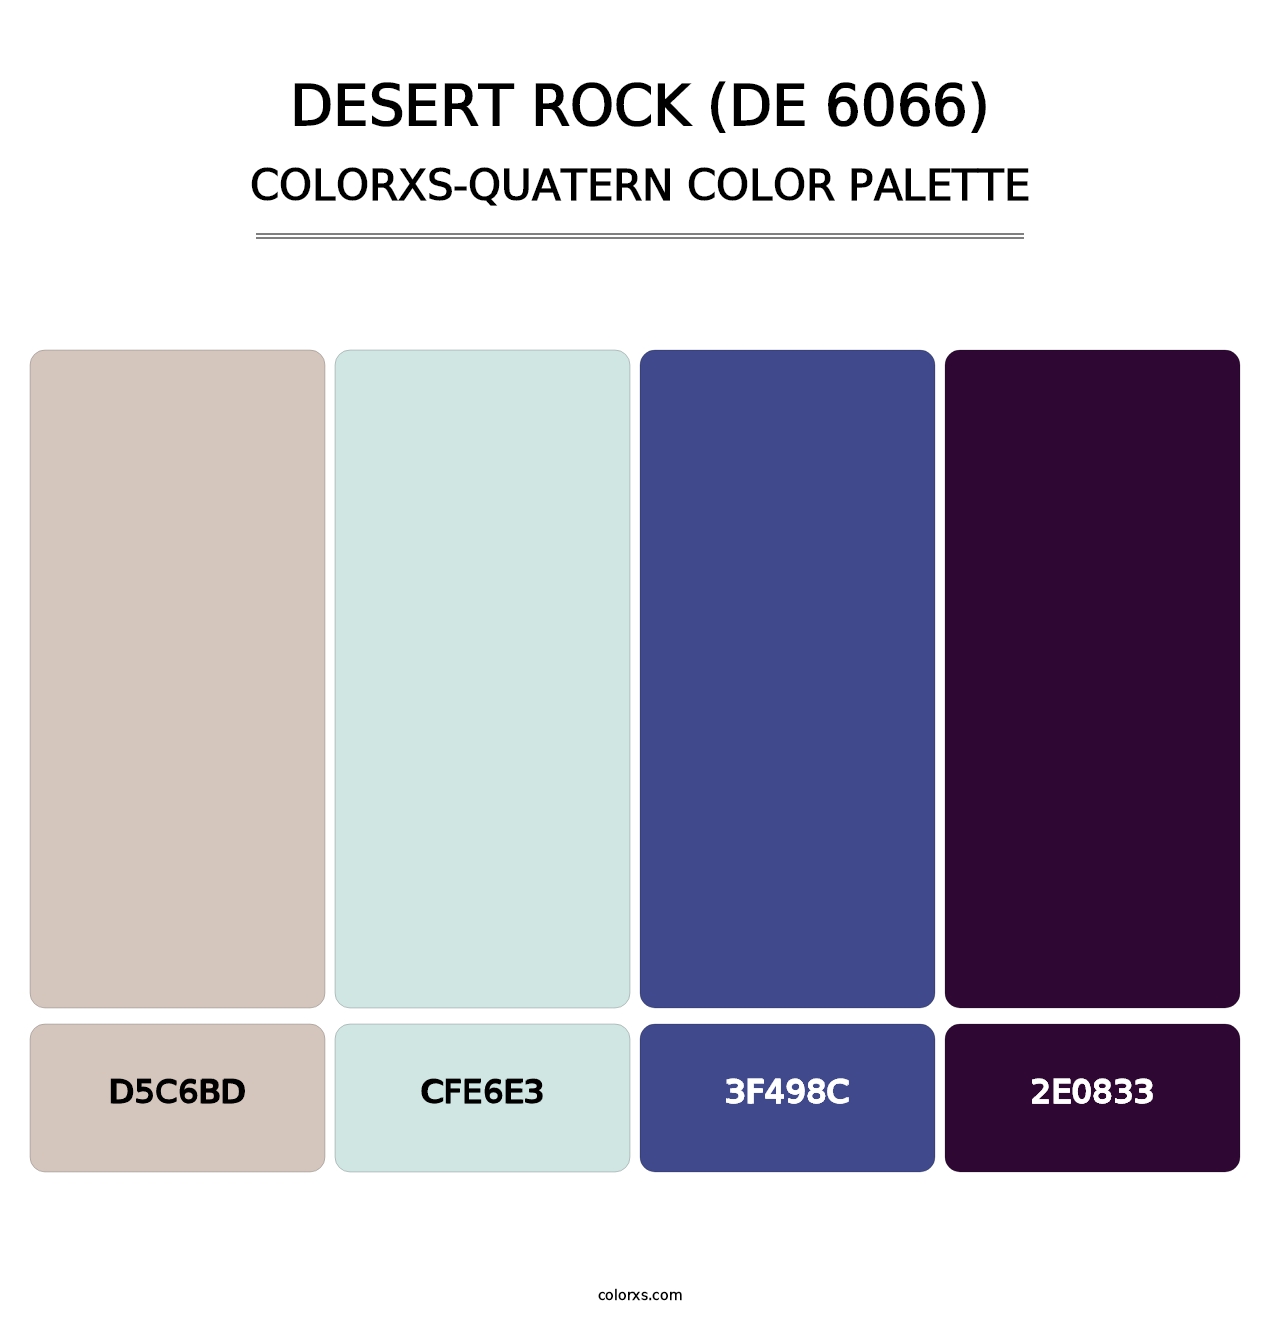 Desert Rock (DE 6066) - Colorxs Quatern Palette